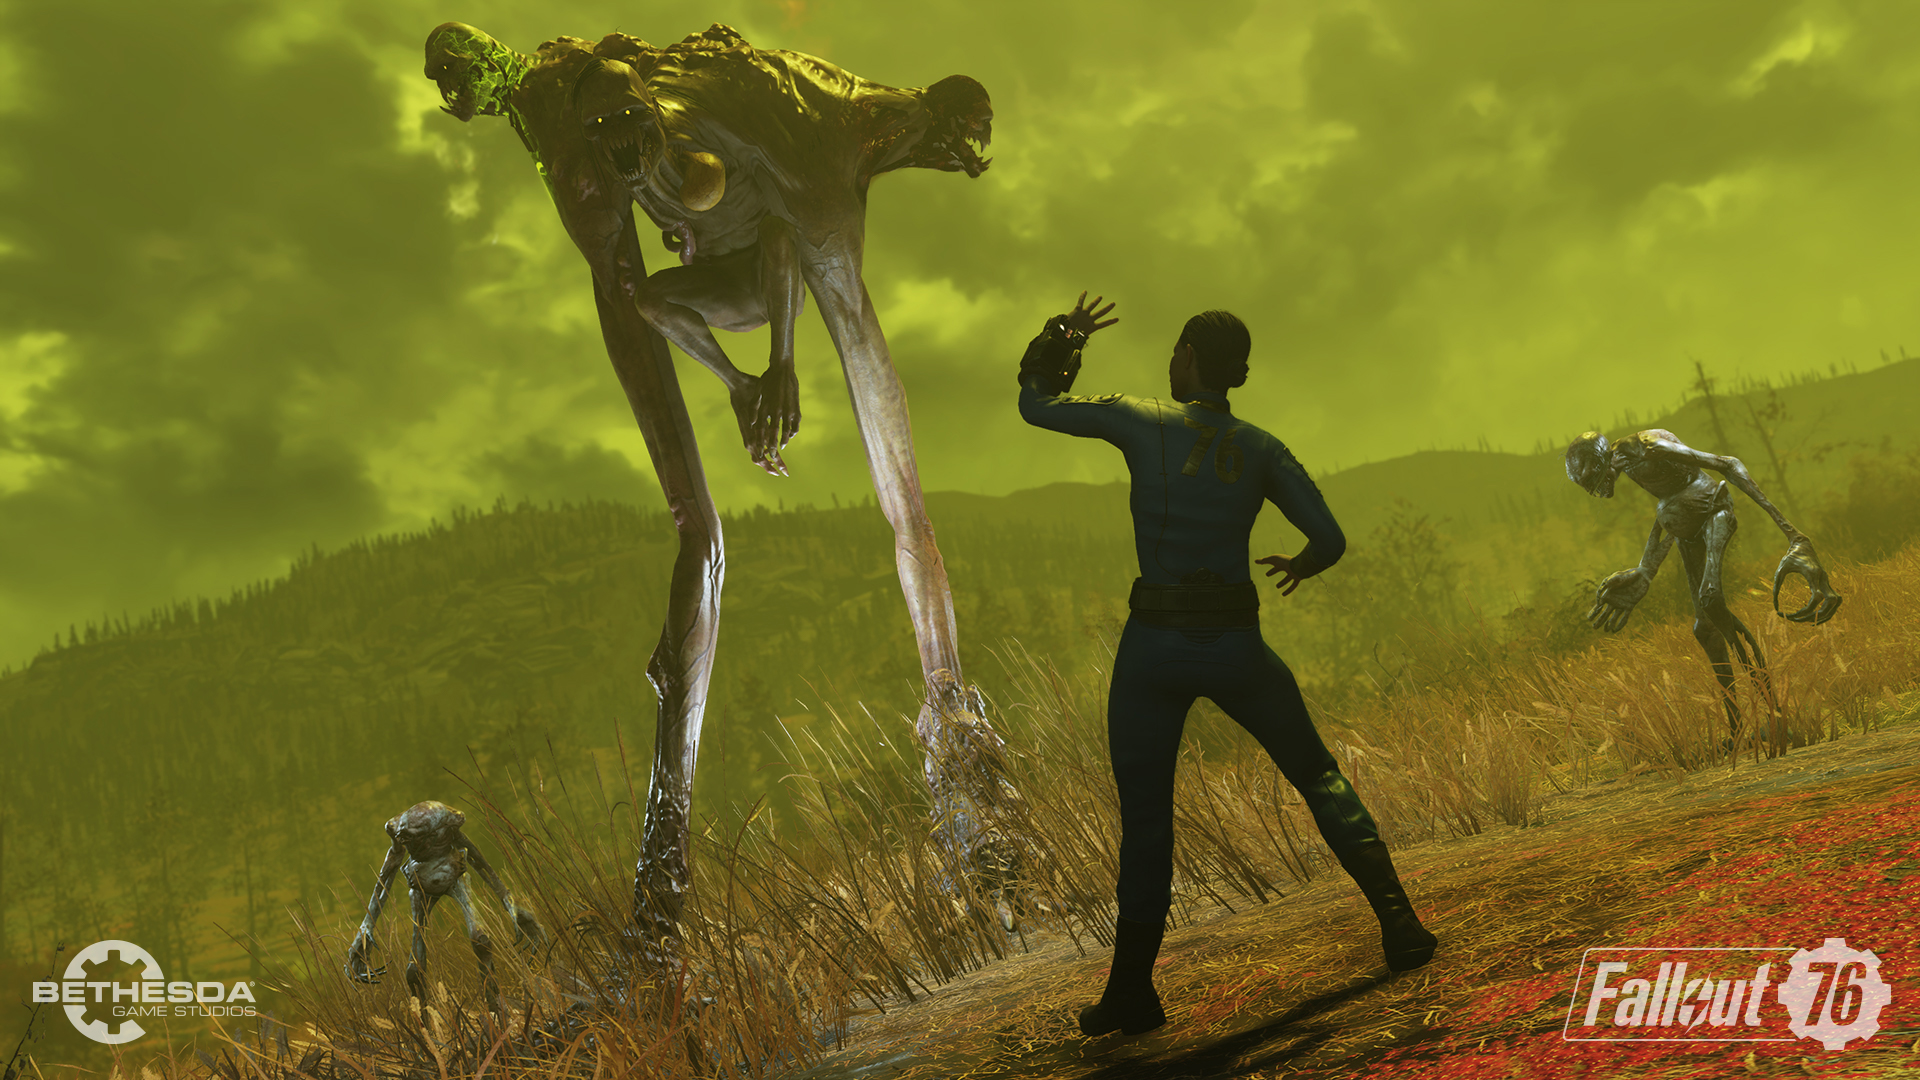 Immagine pubblicata in relazione al seguente contenuto: Fallout 76: Wastelanders  in arrivo: guarda il trailer e gli screenshots | Nome immagine: news30636_Fallout76-Wastelanders-Screenshot_3.jpg